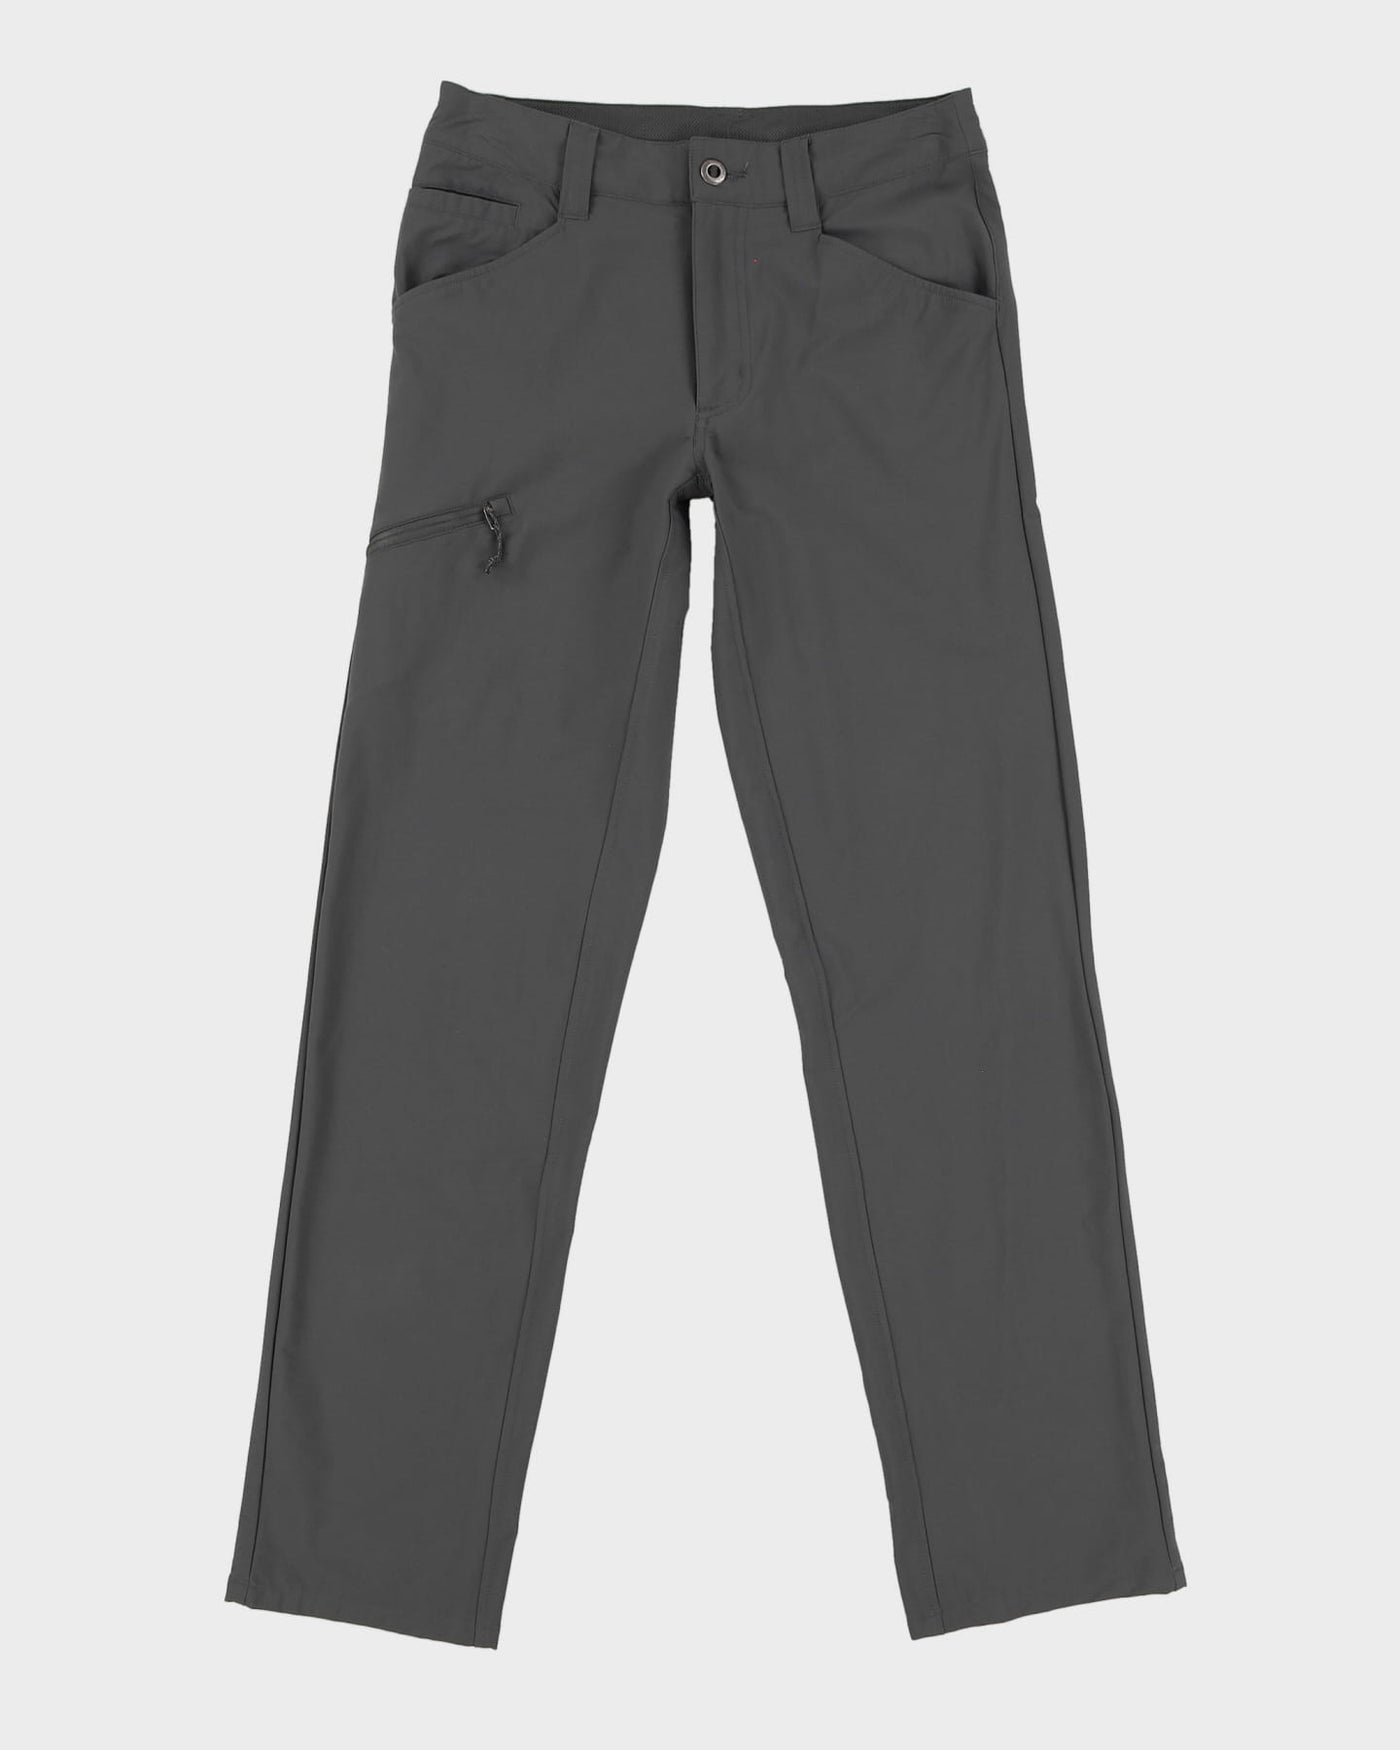 Patagonia Grey Tech / Utility Trousers - W28